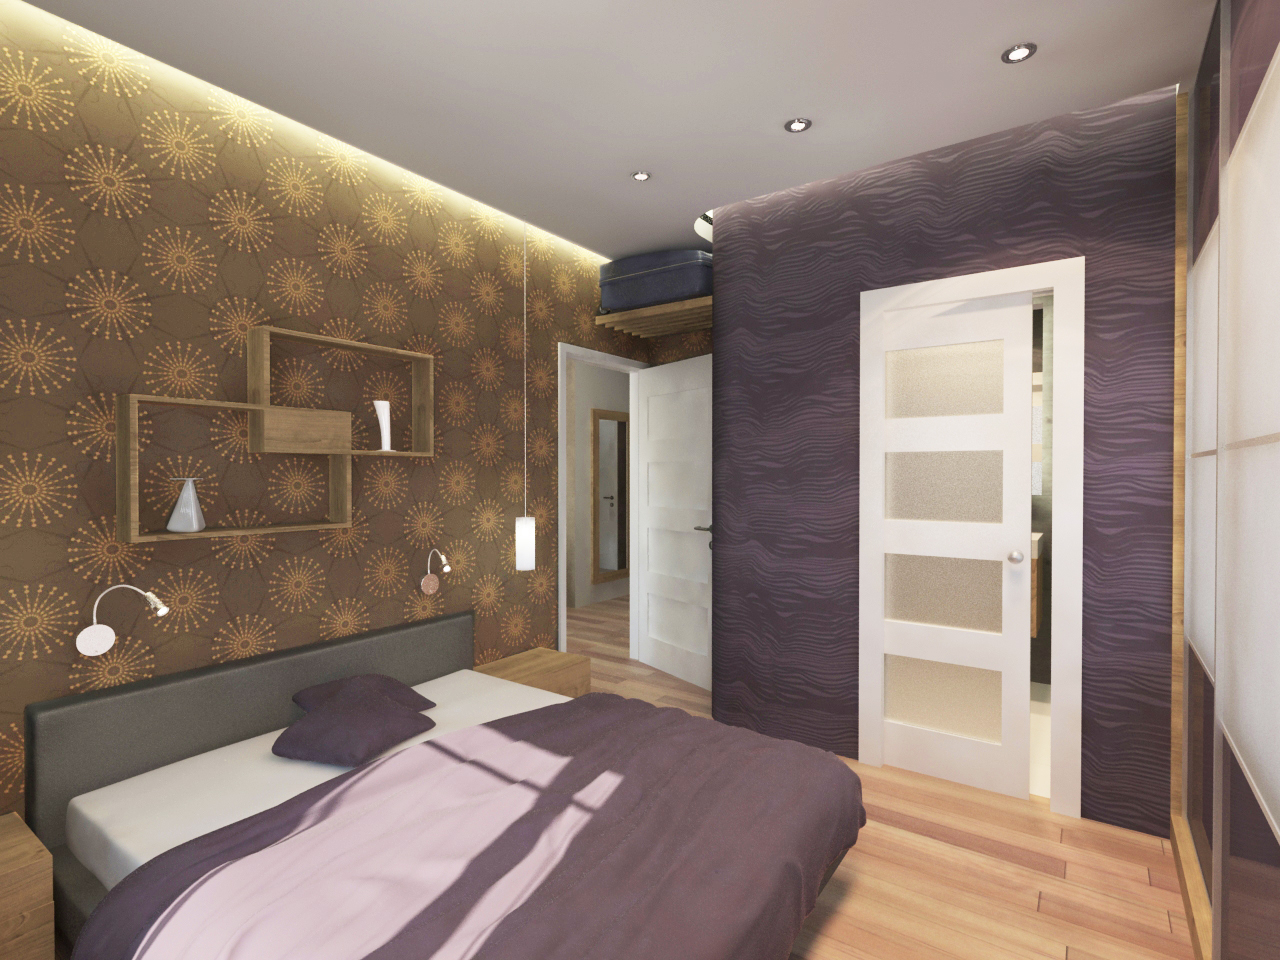 Látványterv hálószoba / Architectural visualization bedroom